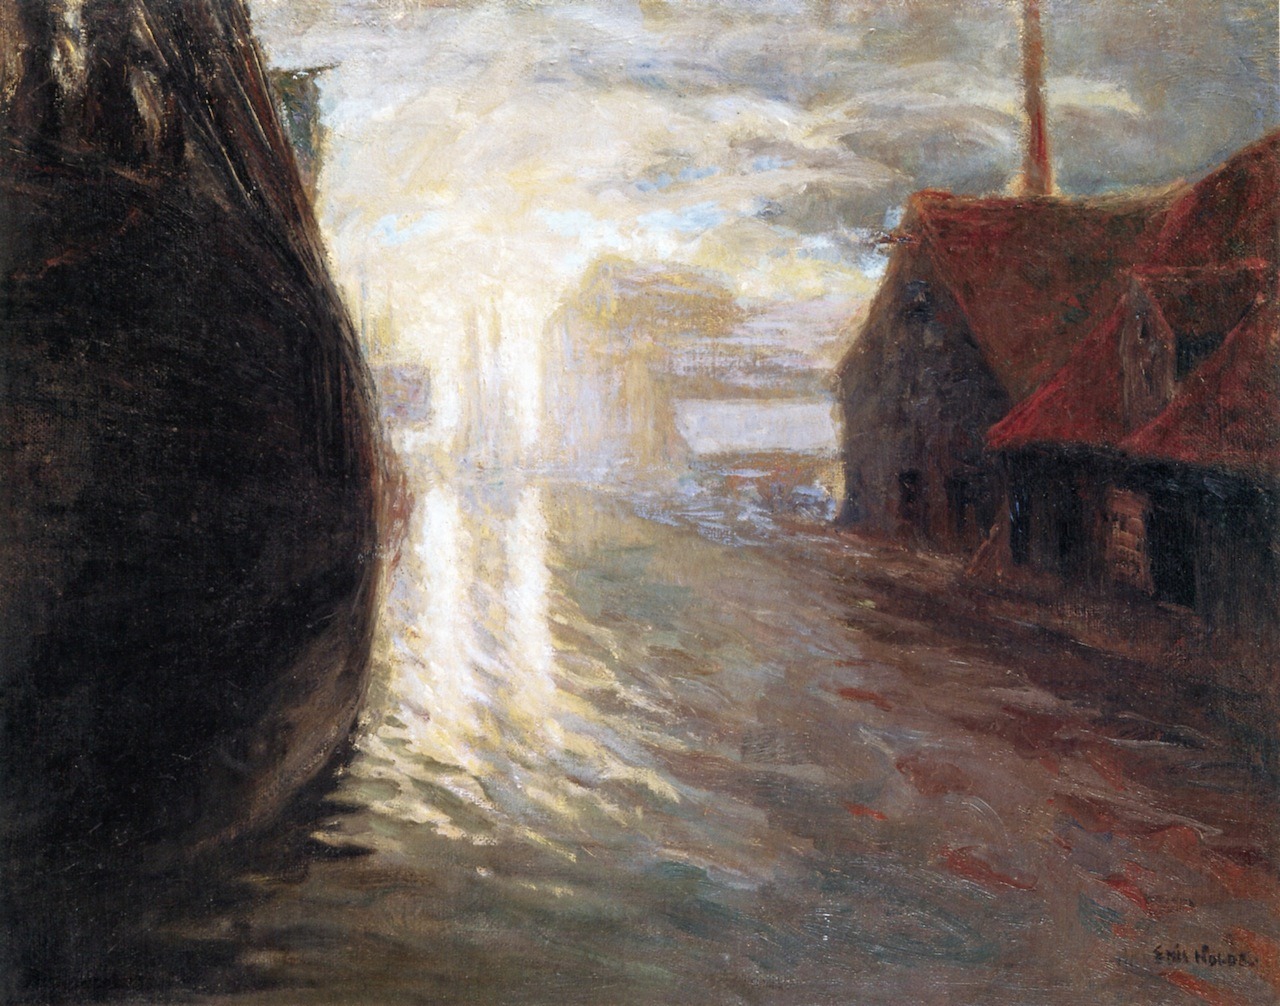 Emil Nolde (Nolde, near Tondern, 1867 - Seebüll, Neukirchen, 1956); Canal - Copenhagen,